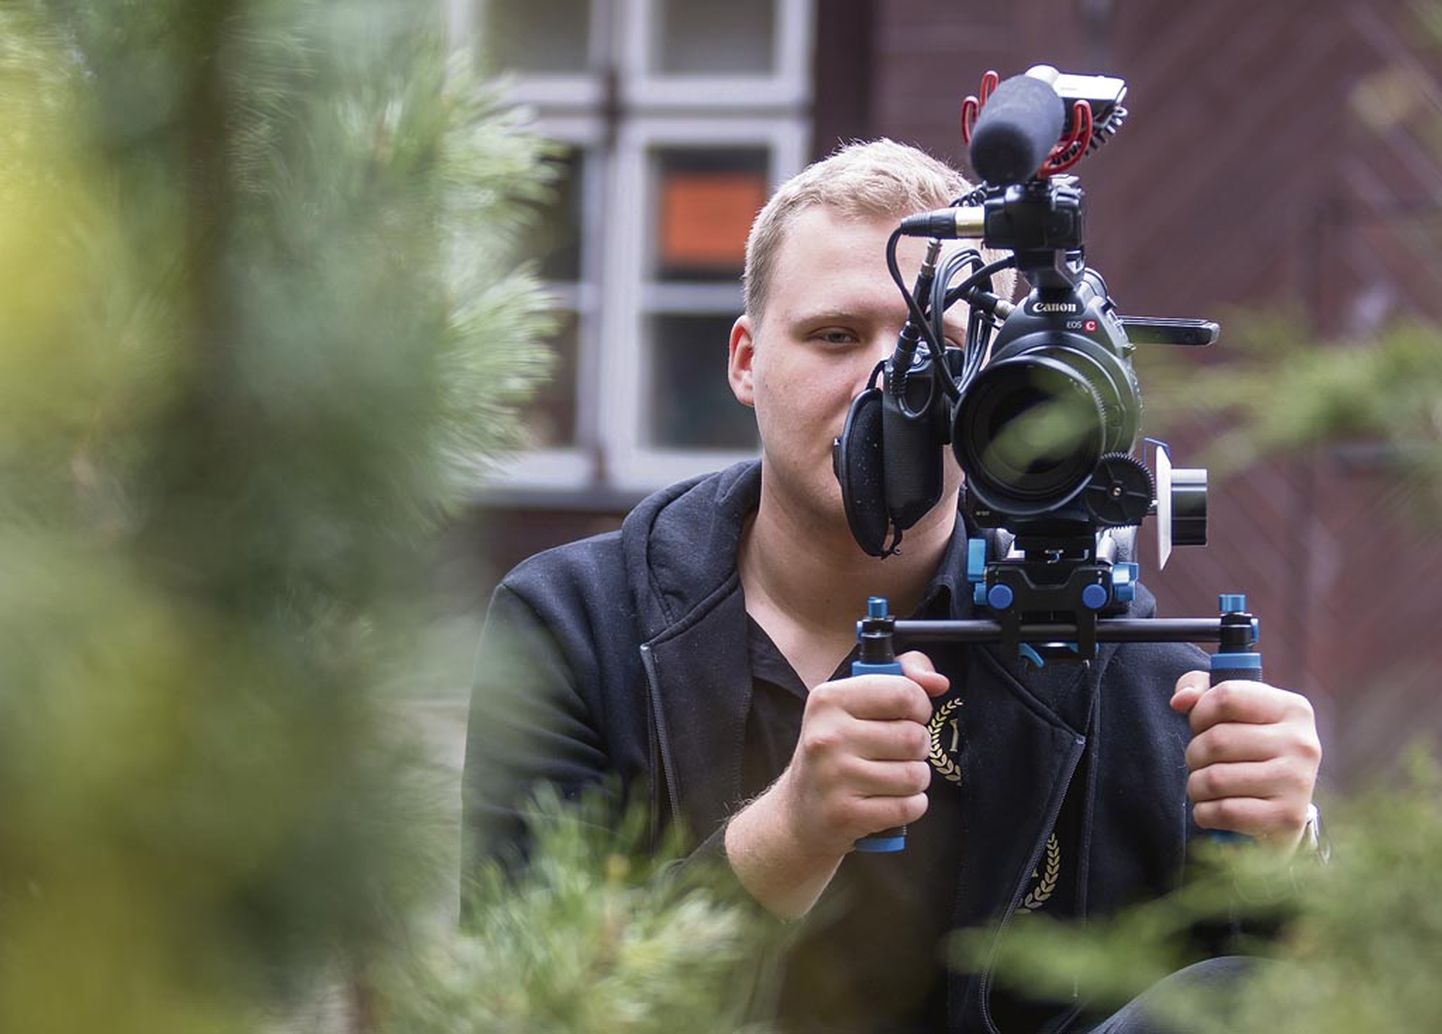 Romet ­Põhako alustas oma videoproduktsioonifirmaga Romulus ­Studios mõni kuu tagasi. Tal on pooleli töö MTÜ Eesti Jahinaistega ja tehtud näidis­klipp Krooni ­Kohvikule.